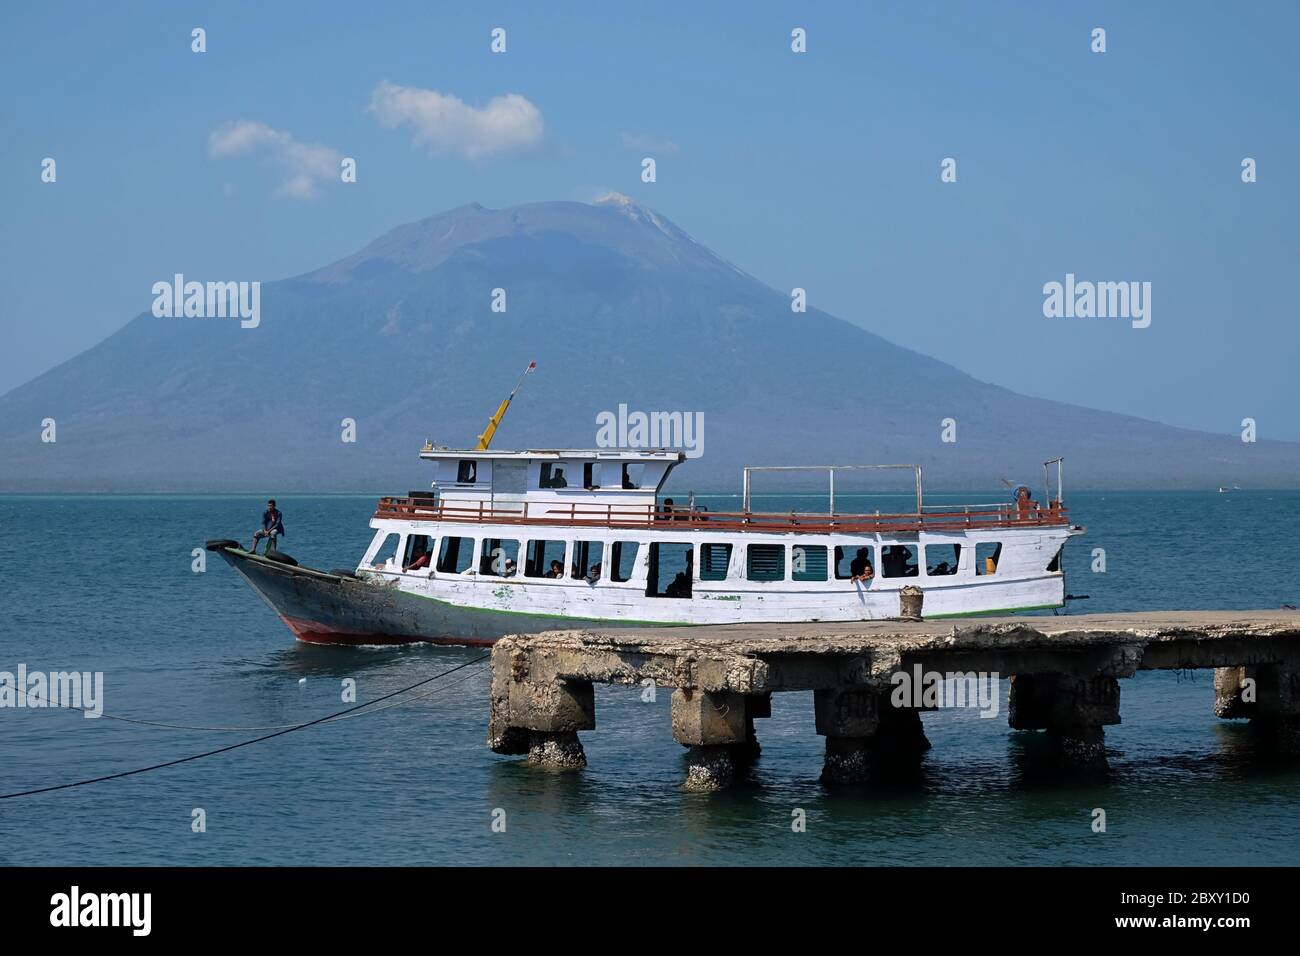 Im Hintergrund ist ein hölzernes Passagierschiff zu sehen, das sich auf dem Küstenwasser von Lewoleba bewegt, mit dem Lewotolok-Vulkan. Stockfoto